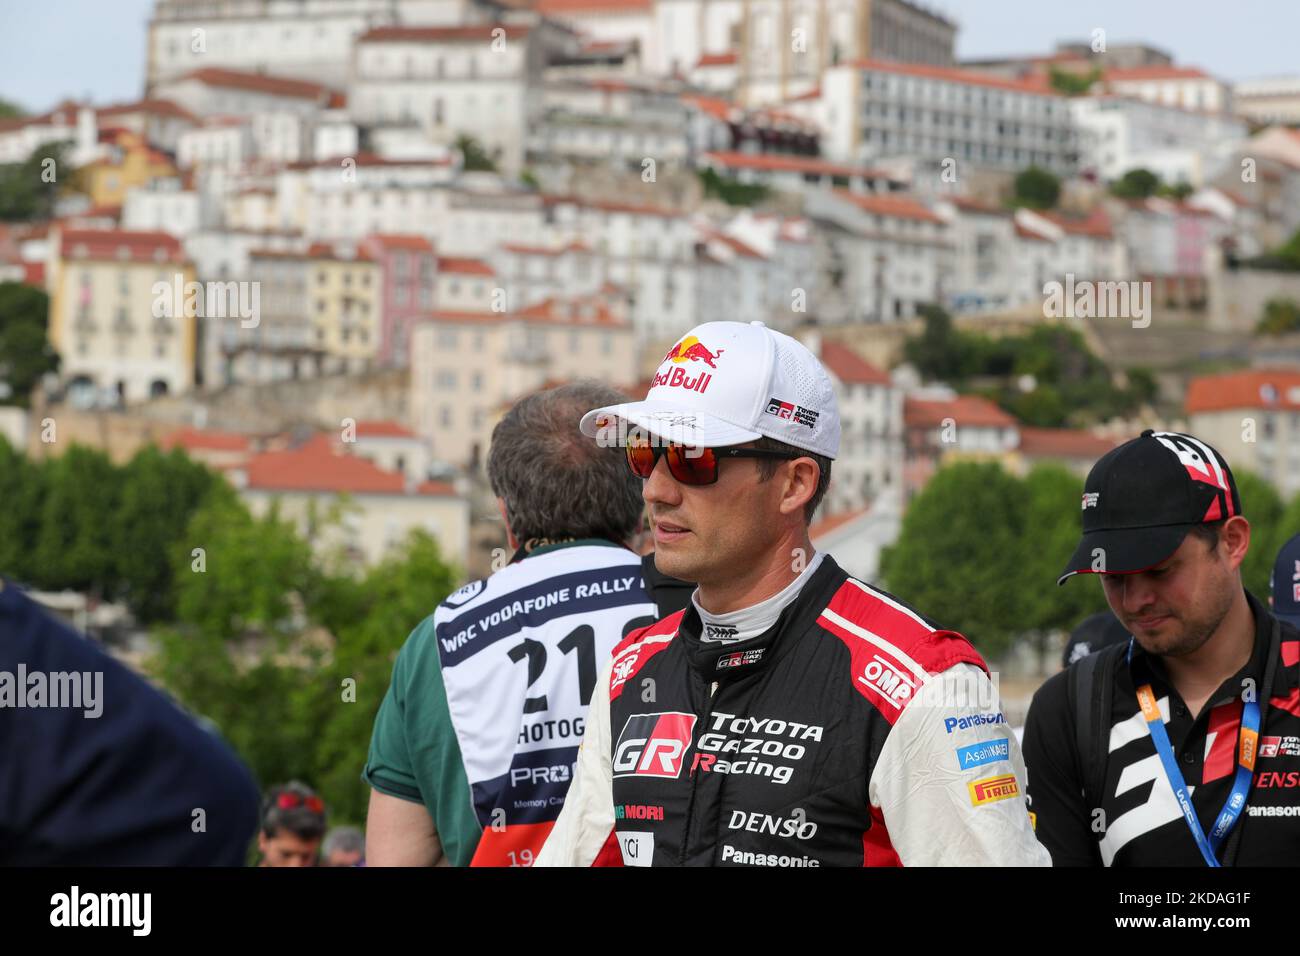 Sebastien OGIER (FRA) während der Rallye-Startzeremonie, Foto von Fahrern in Coimbra der WRC Vodafone Rally Portugal 2022 in Matosinhos - Portugal, am 19. Mai 2022. (Foto von Paulo Oliveira / NurPhoto) Stockfoto